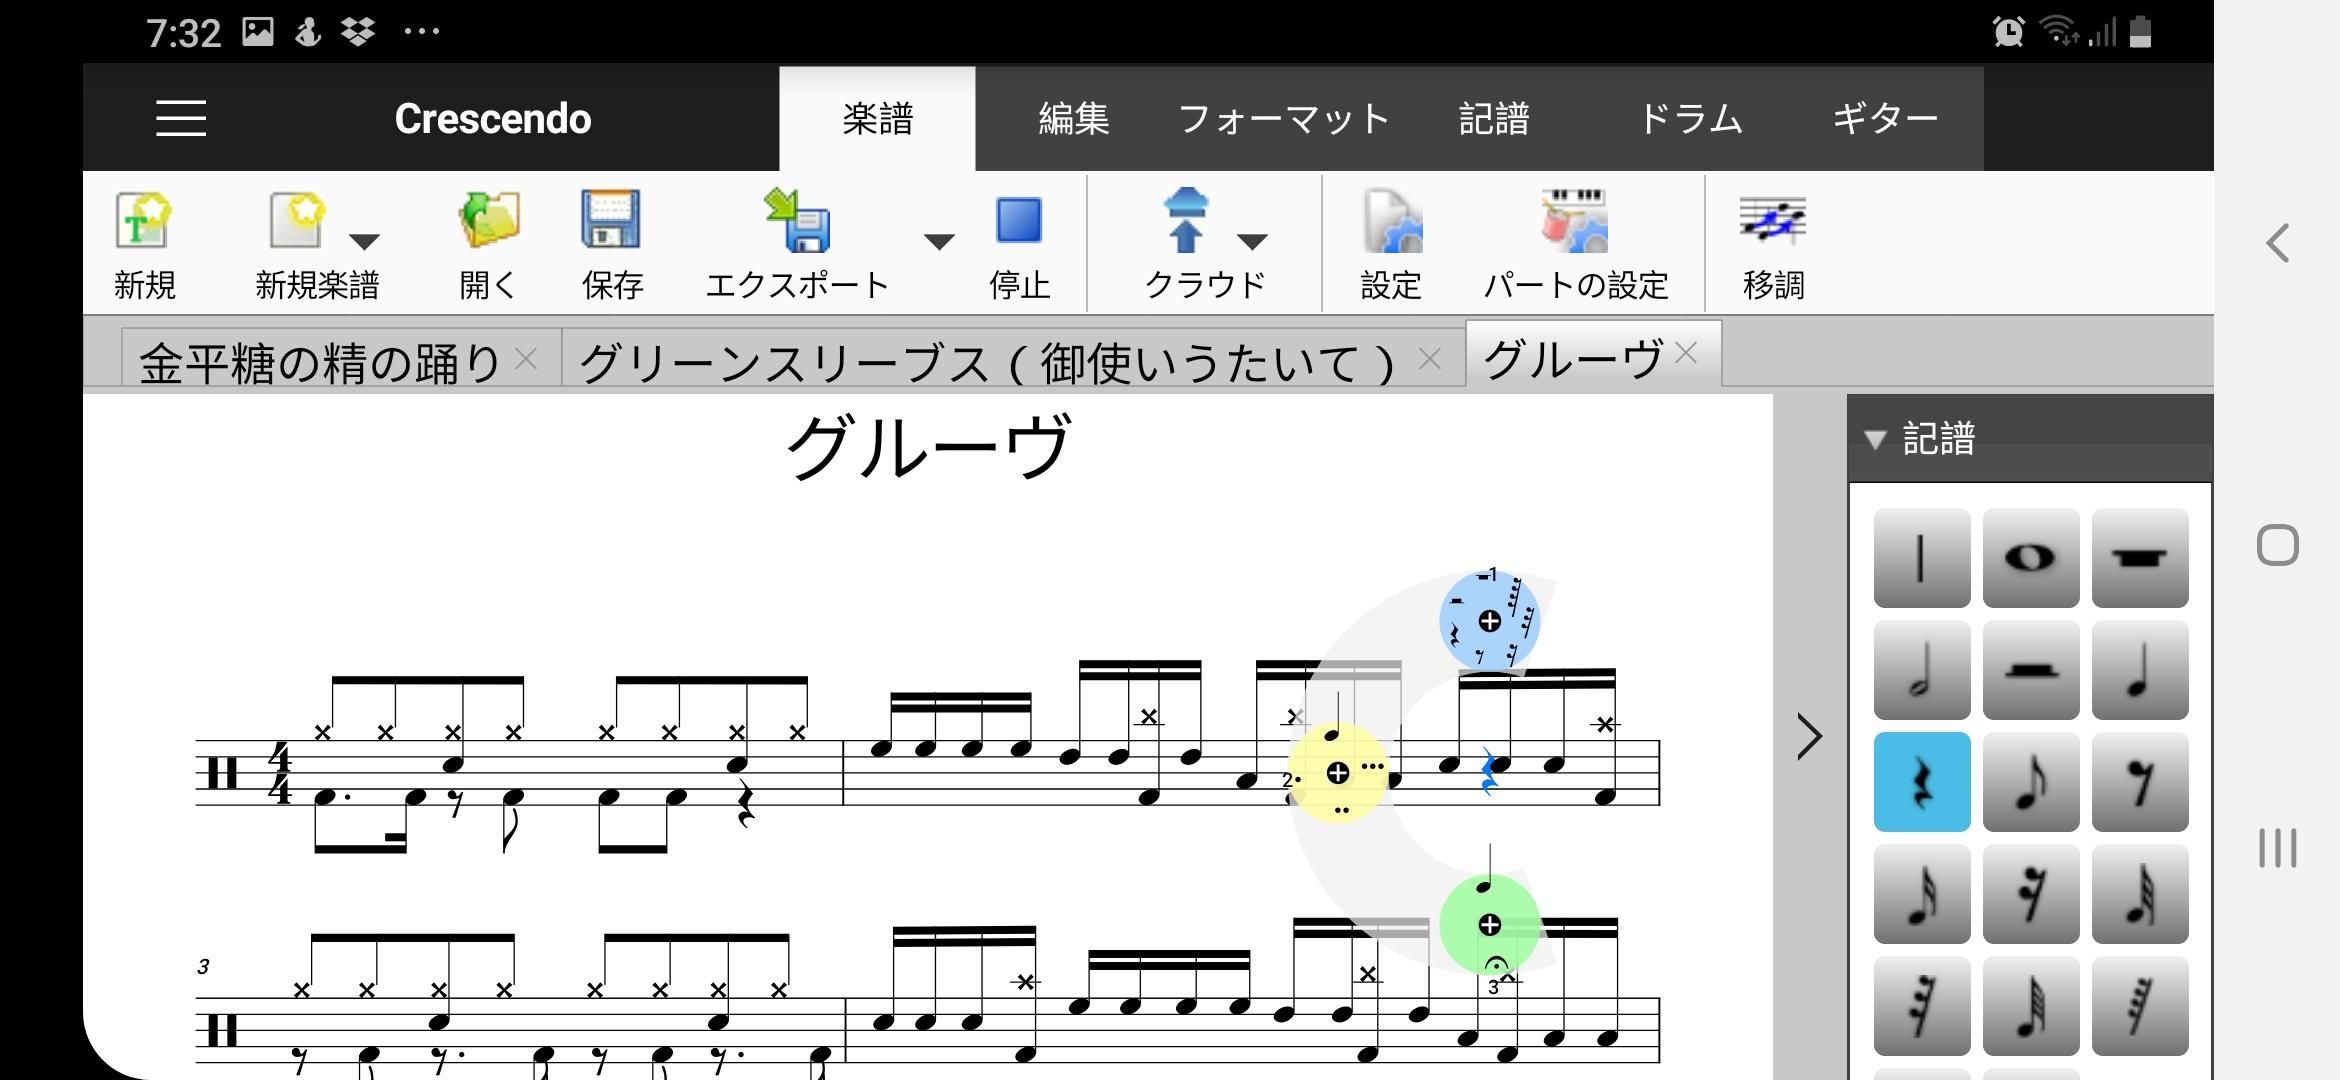 Crescendo楽譜作成アプリ無料版 6.63 Screenshot 3